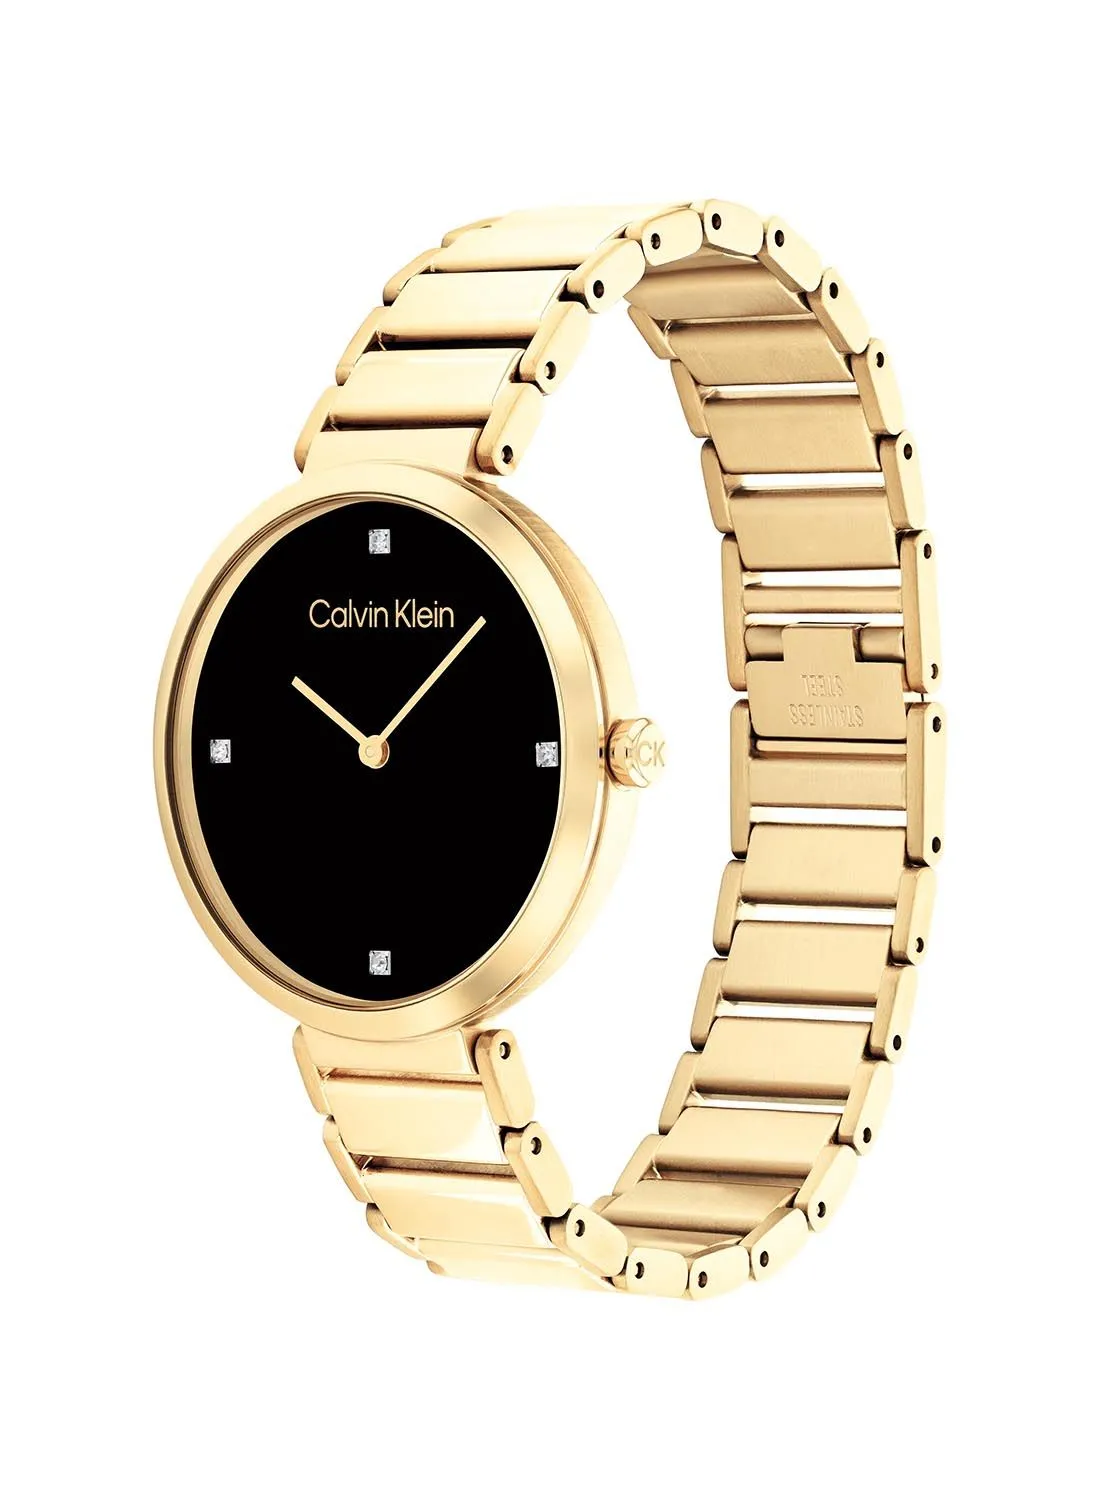 CALVIN KLEIN Analog Round Waterproof  Wrist Watch With Gold Strap 25200136